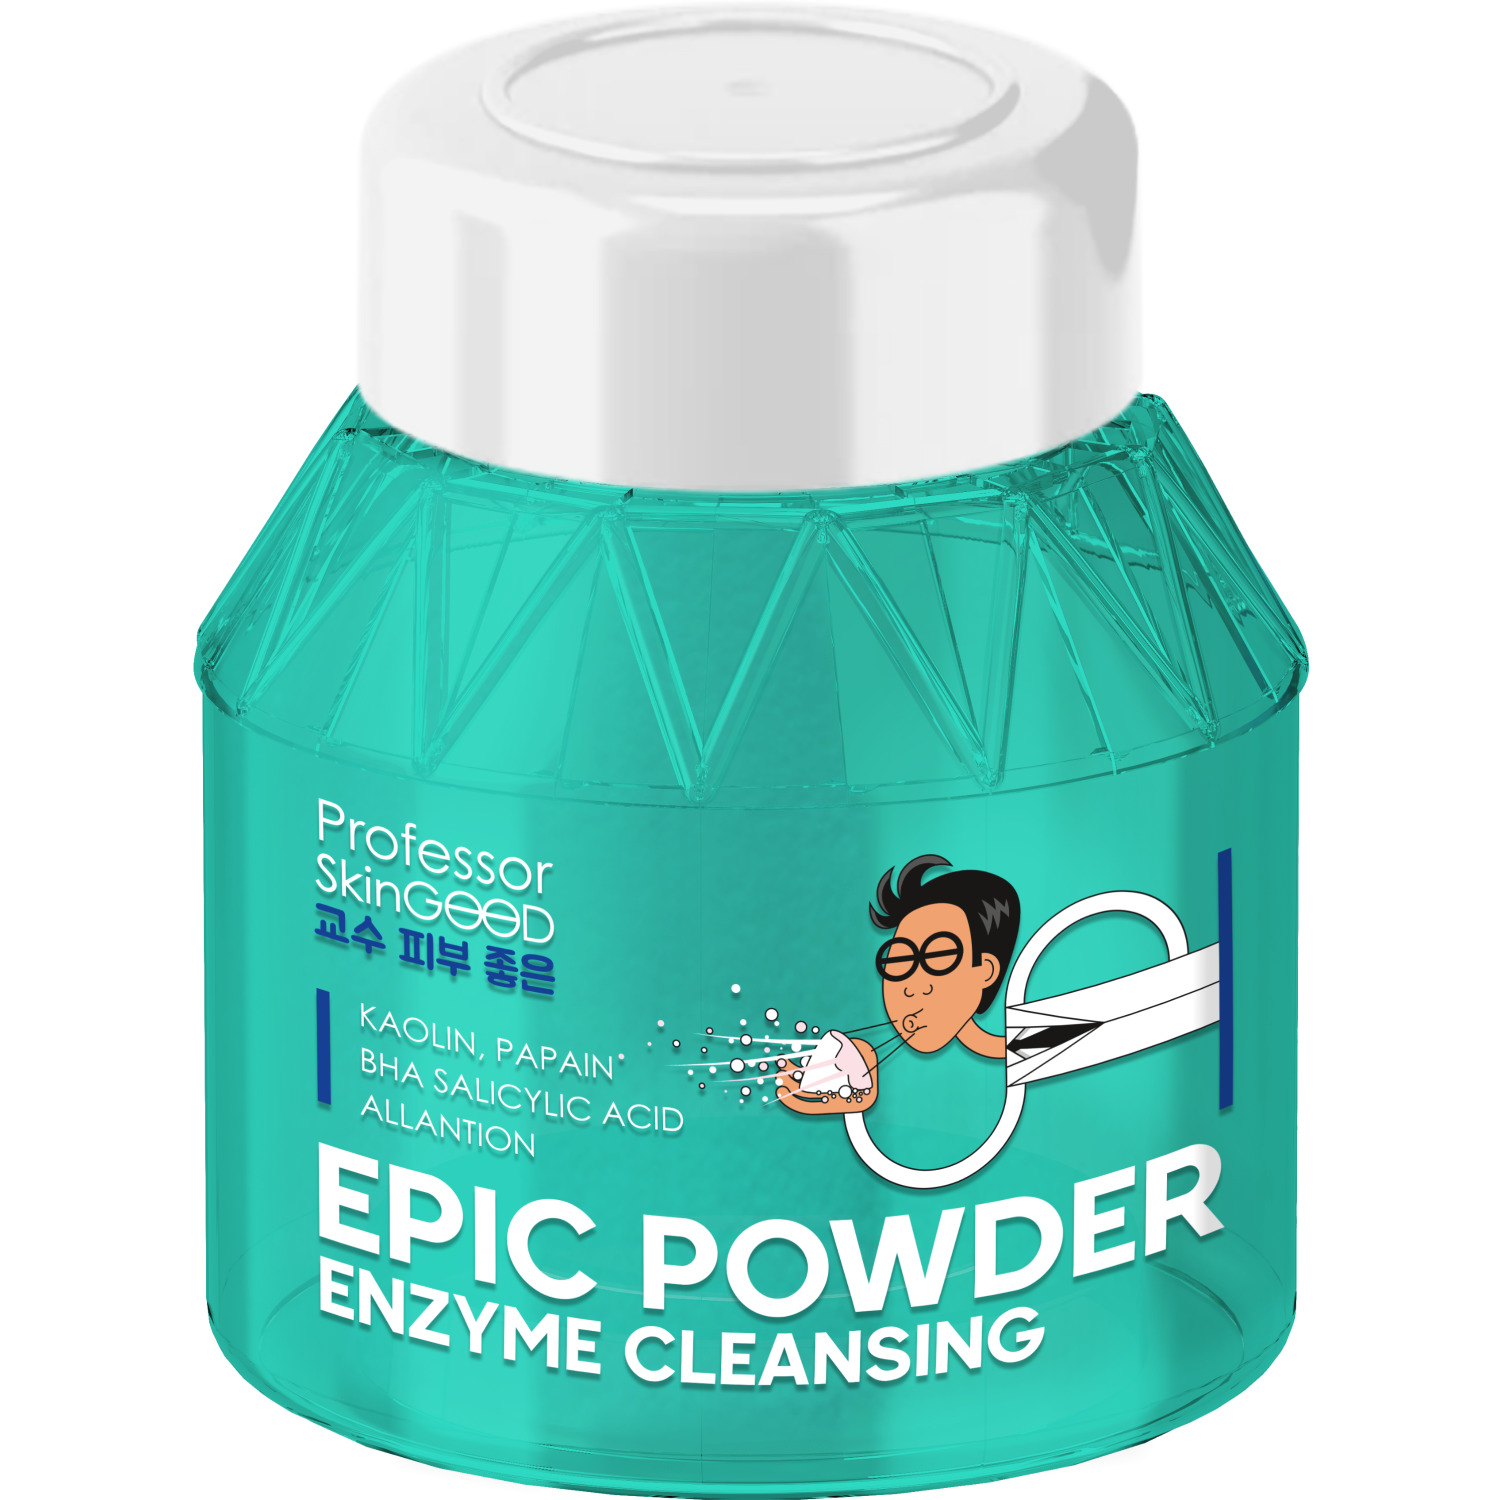 Пудра для умывания Professor SkinGOOD Epic Powder Enzyme Cleansing энзимная, 66 г осветляющая очищающая пудра melafadin cleansing powder свойства не назначены